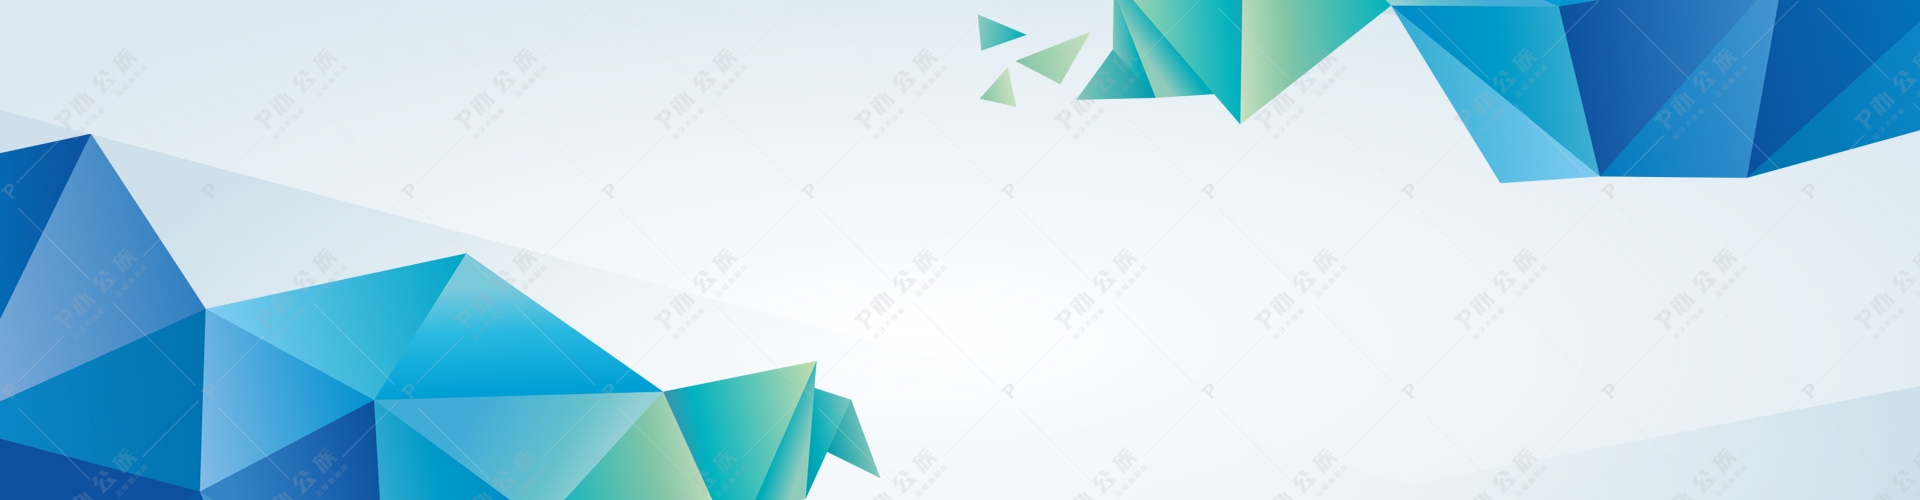 蓝色科技企业公司时尚大气抽象背景banner